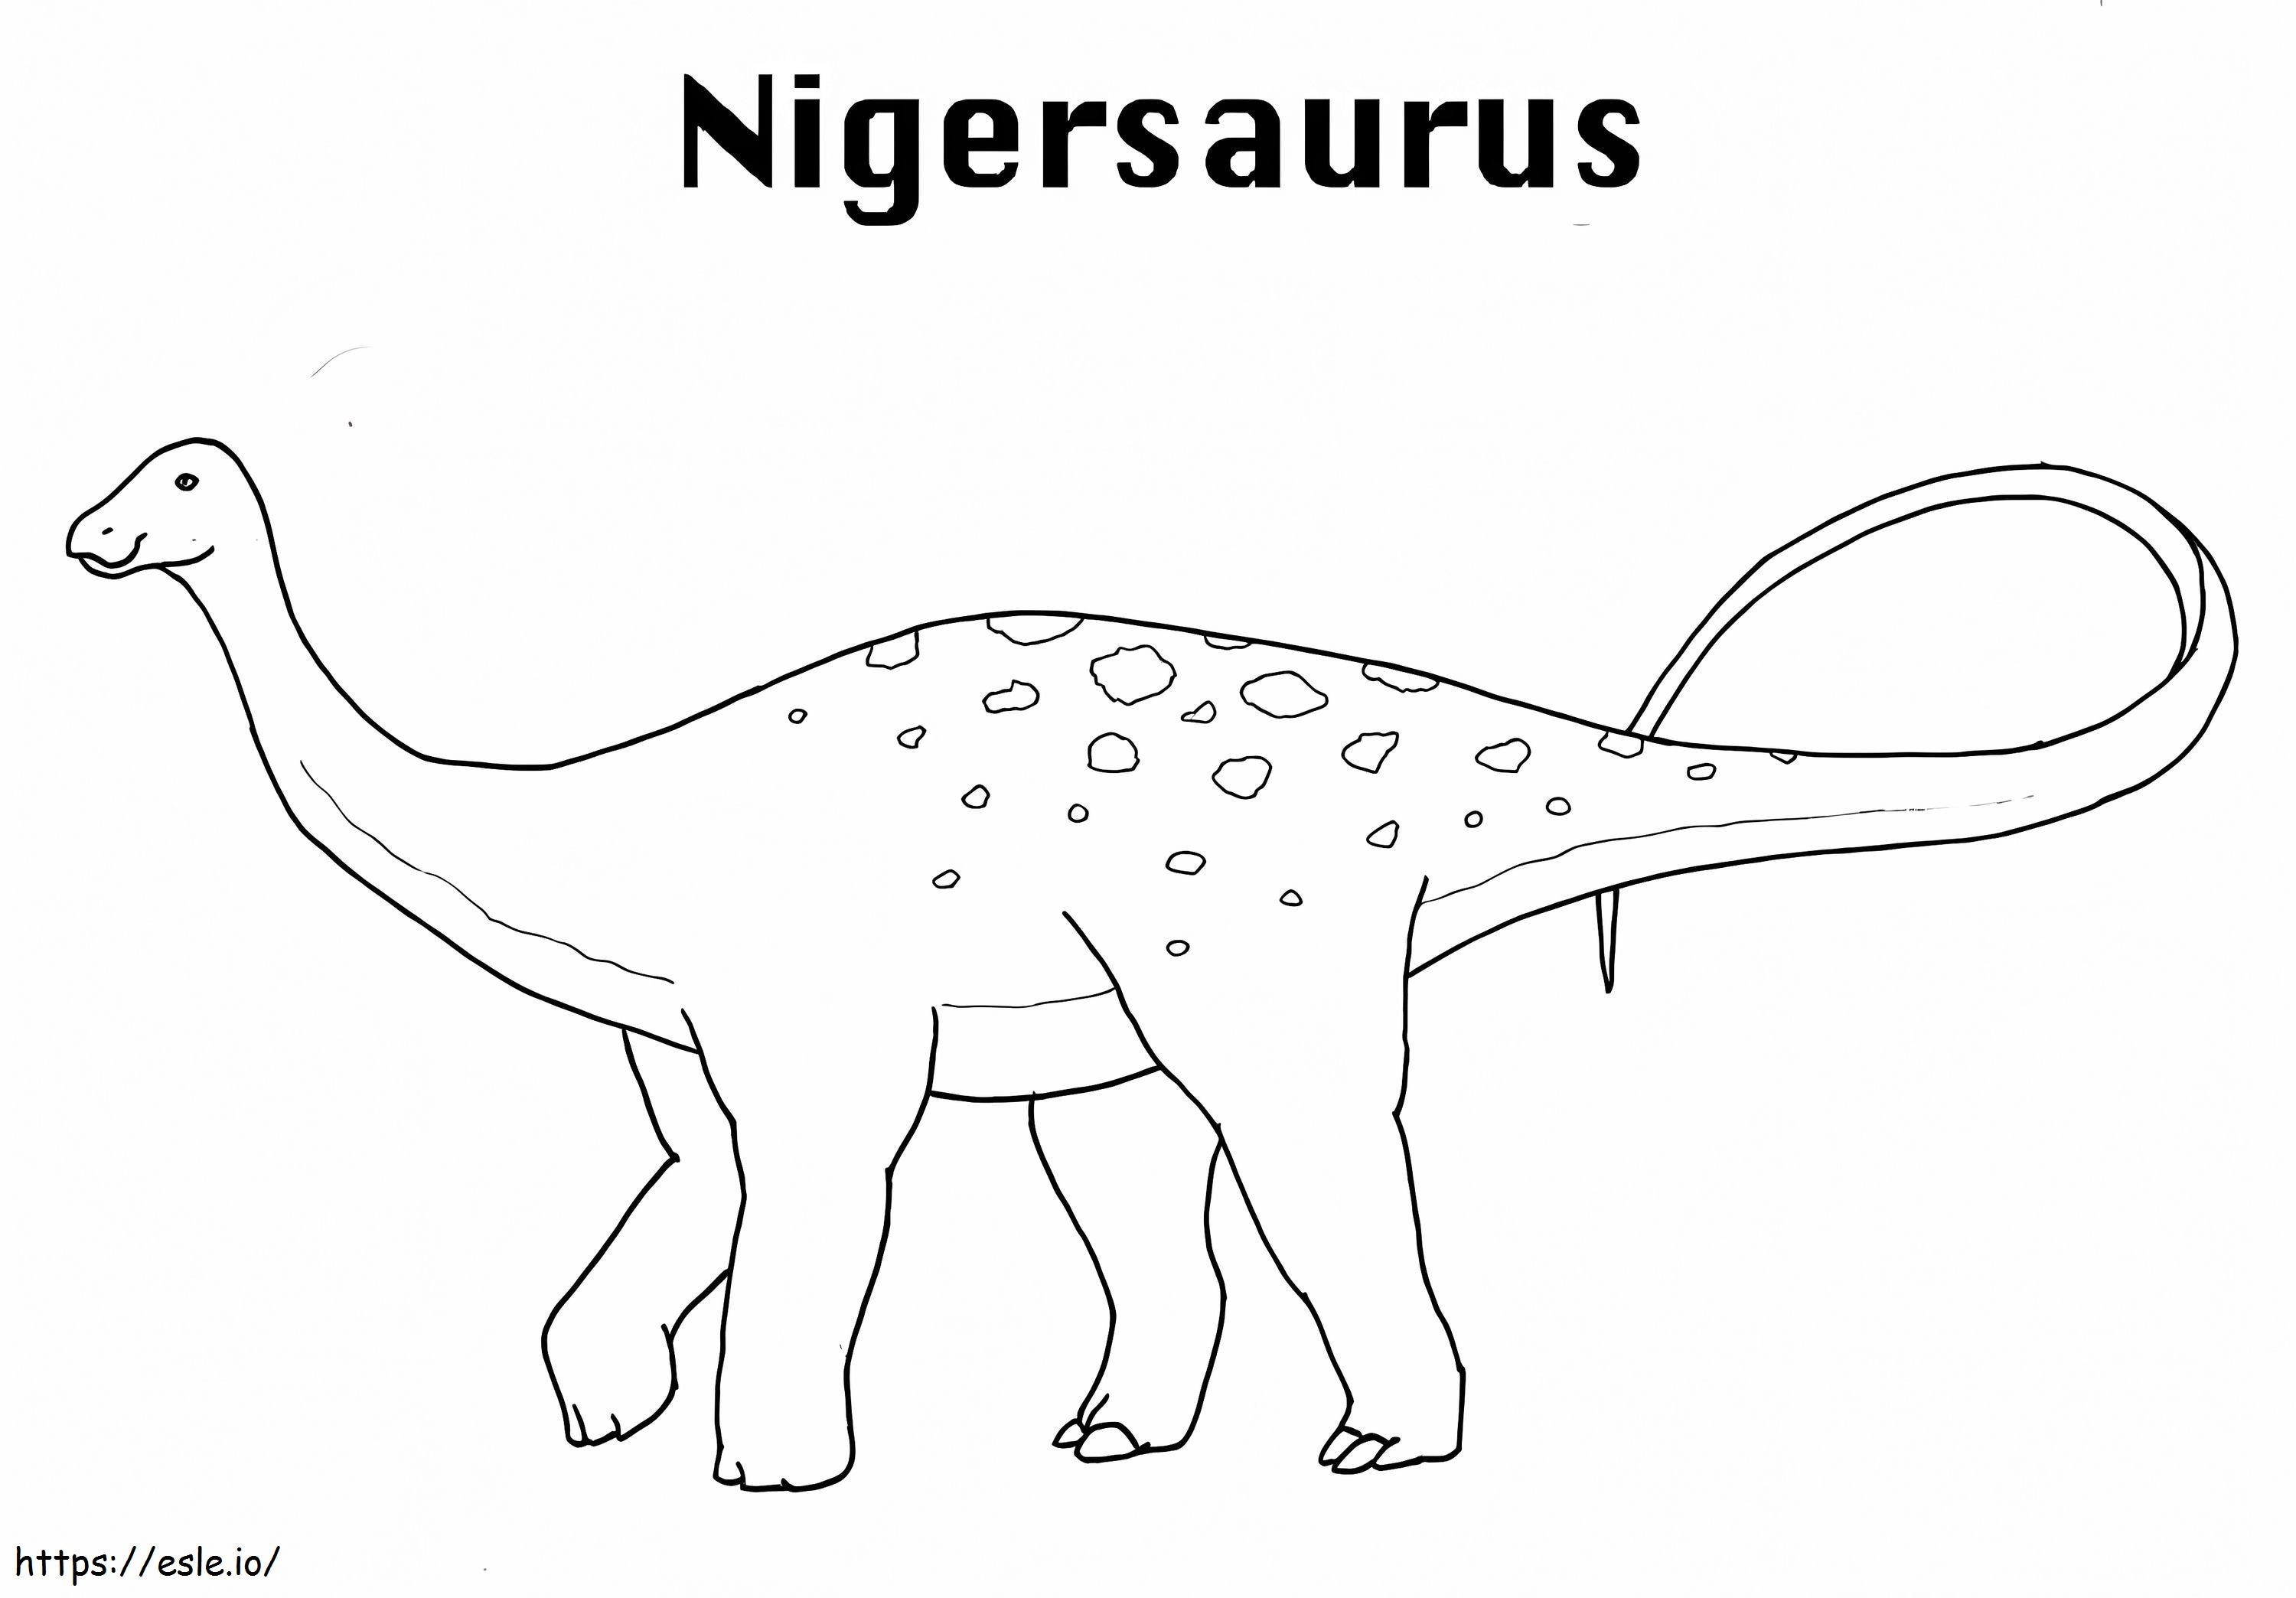 Nigersaurus Dinozor boyama